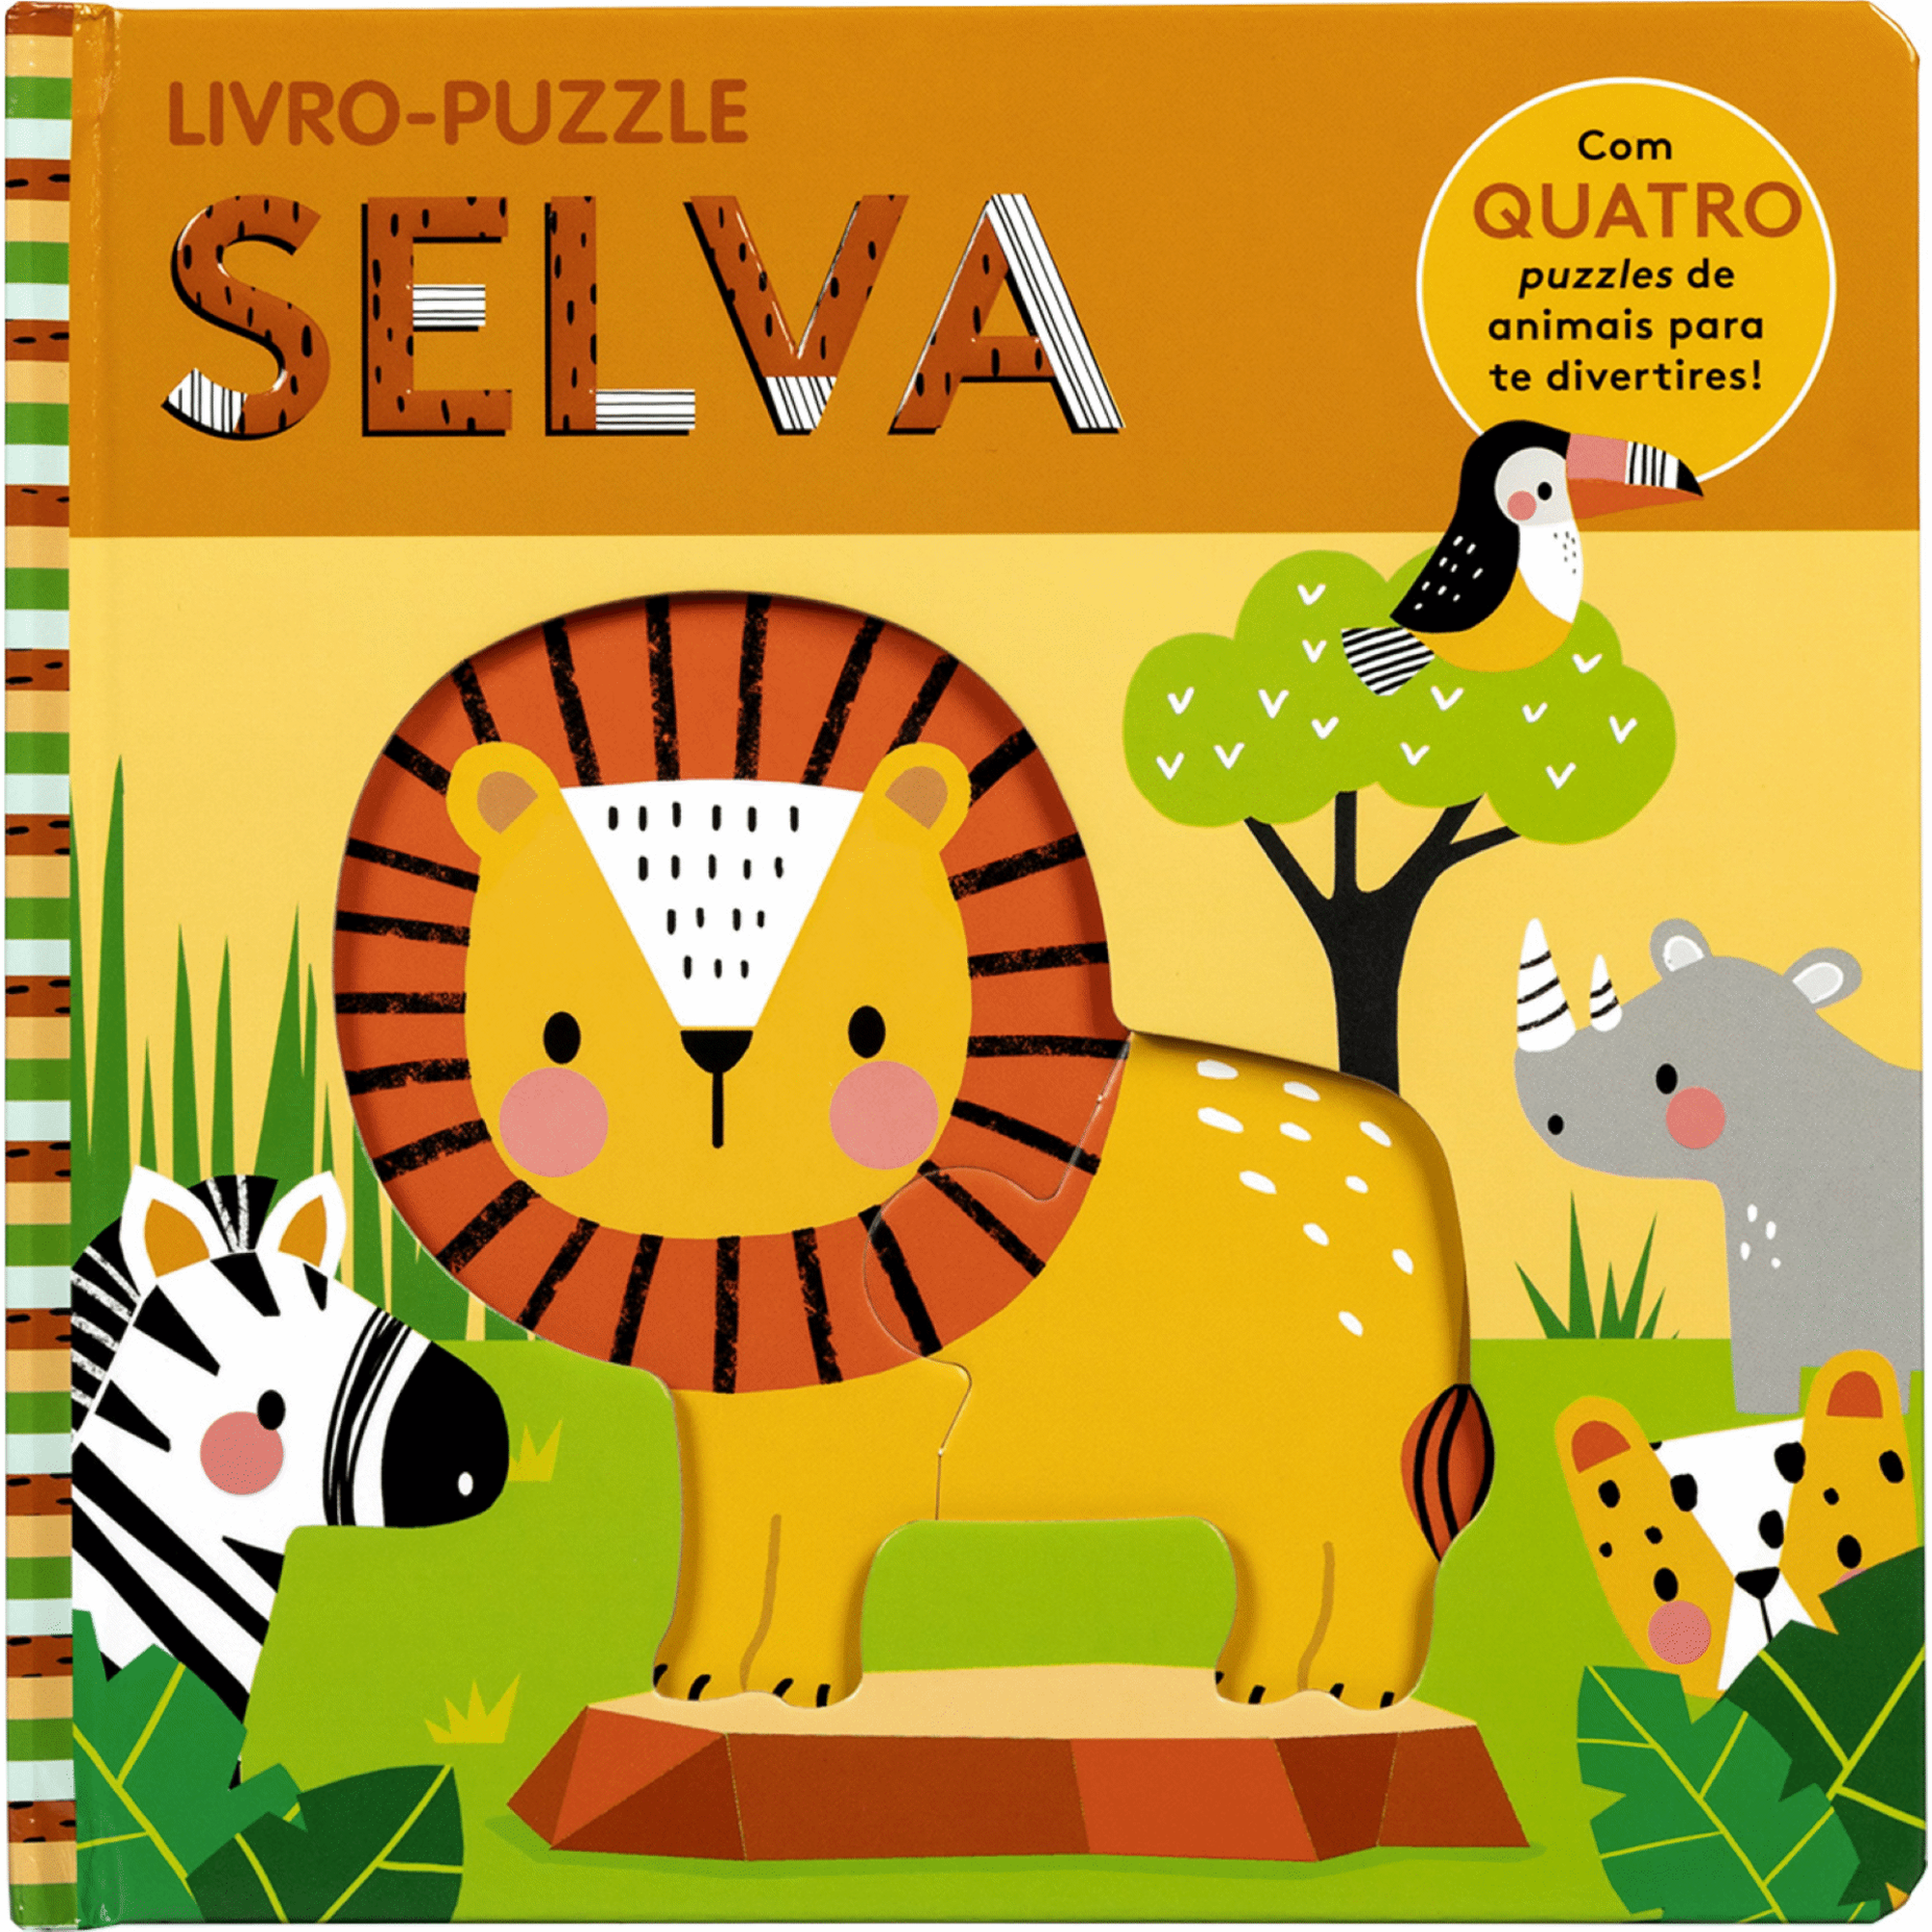 Livro-Puzzle: Selva